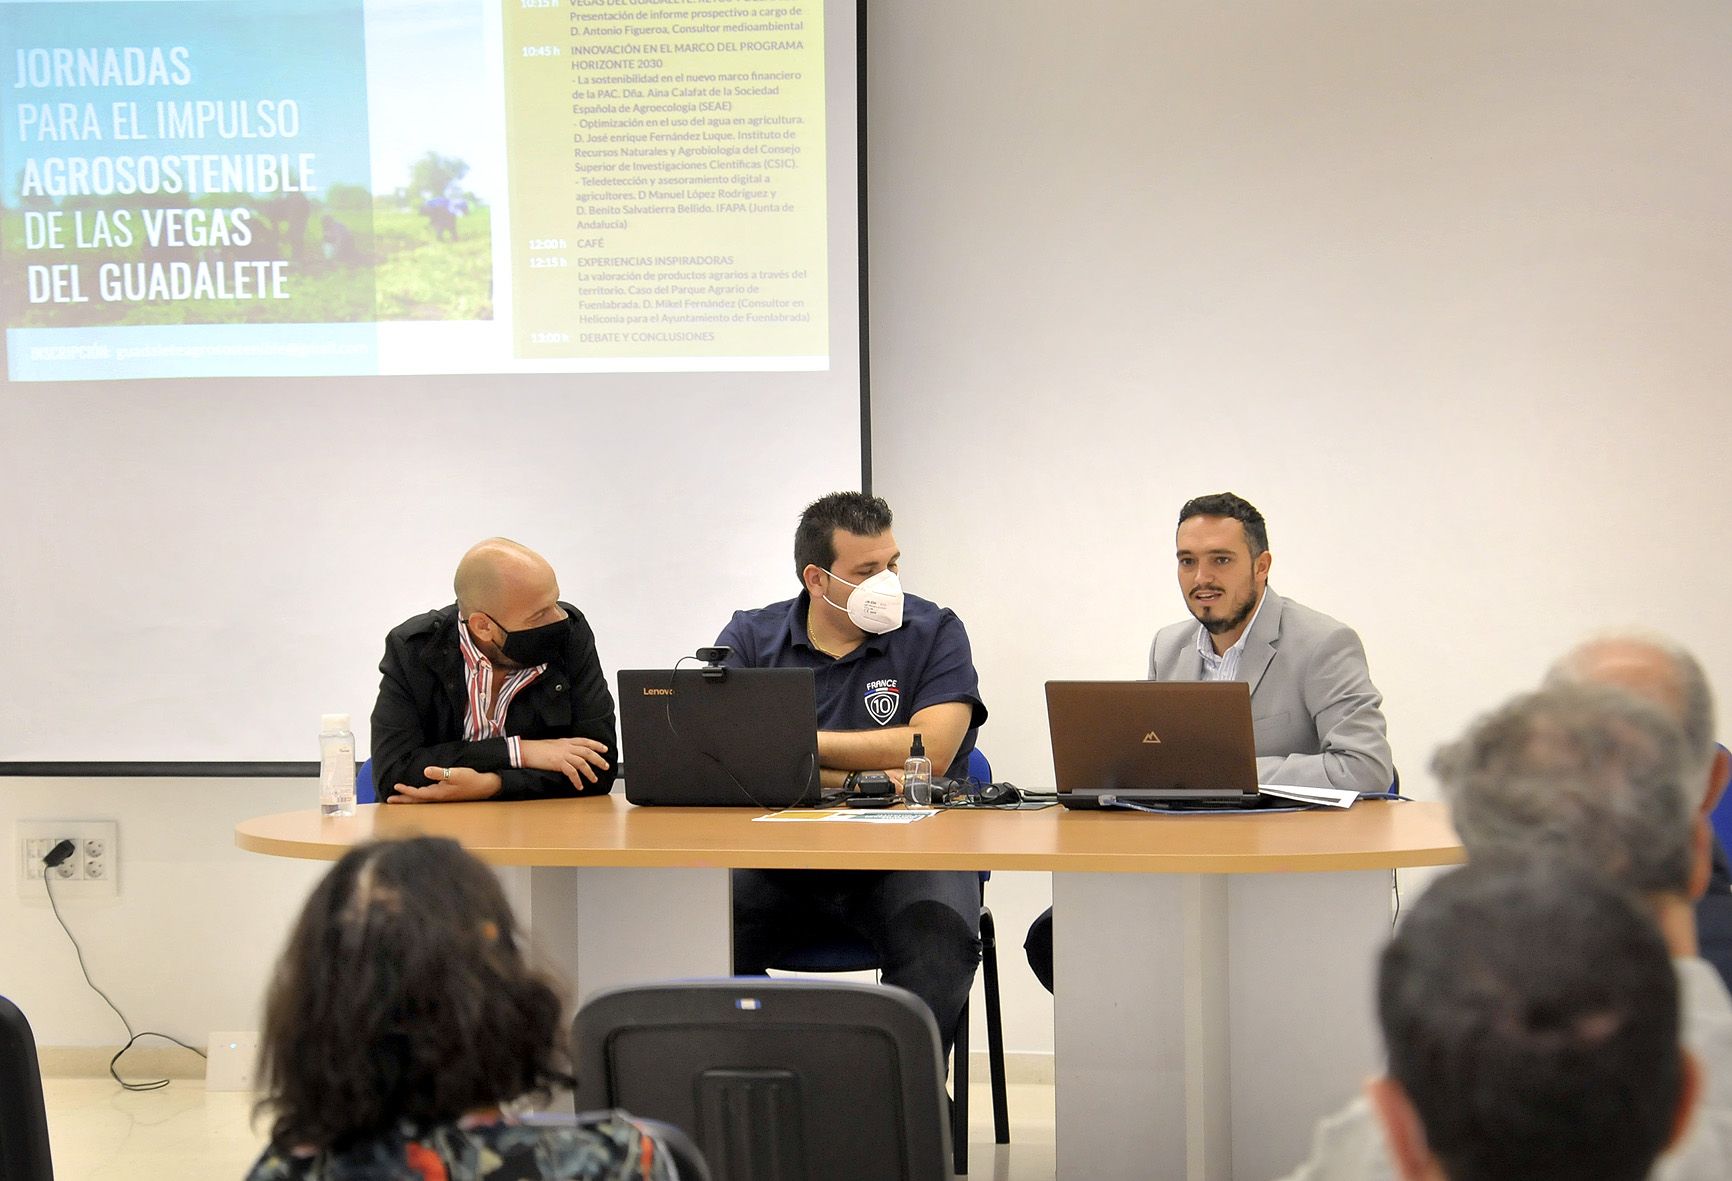 Un momento del seminario en el que se ha presentado el proyecto Jerez de un parque agrario en las vegas del Guadalete.